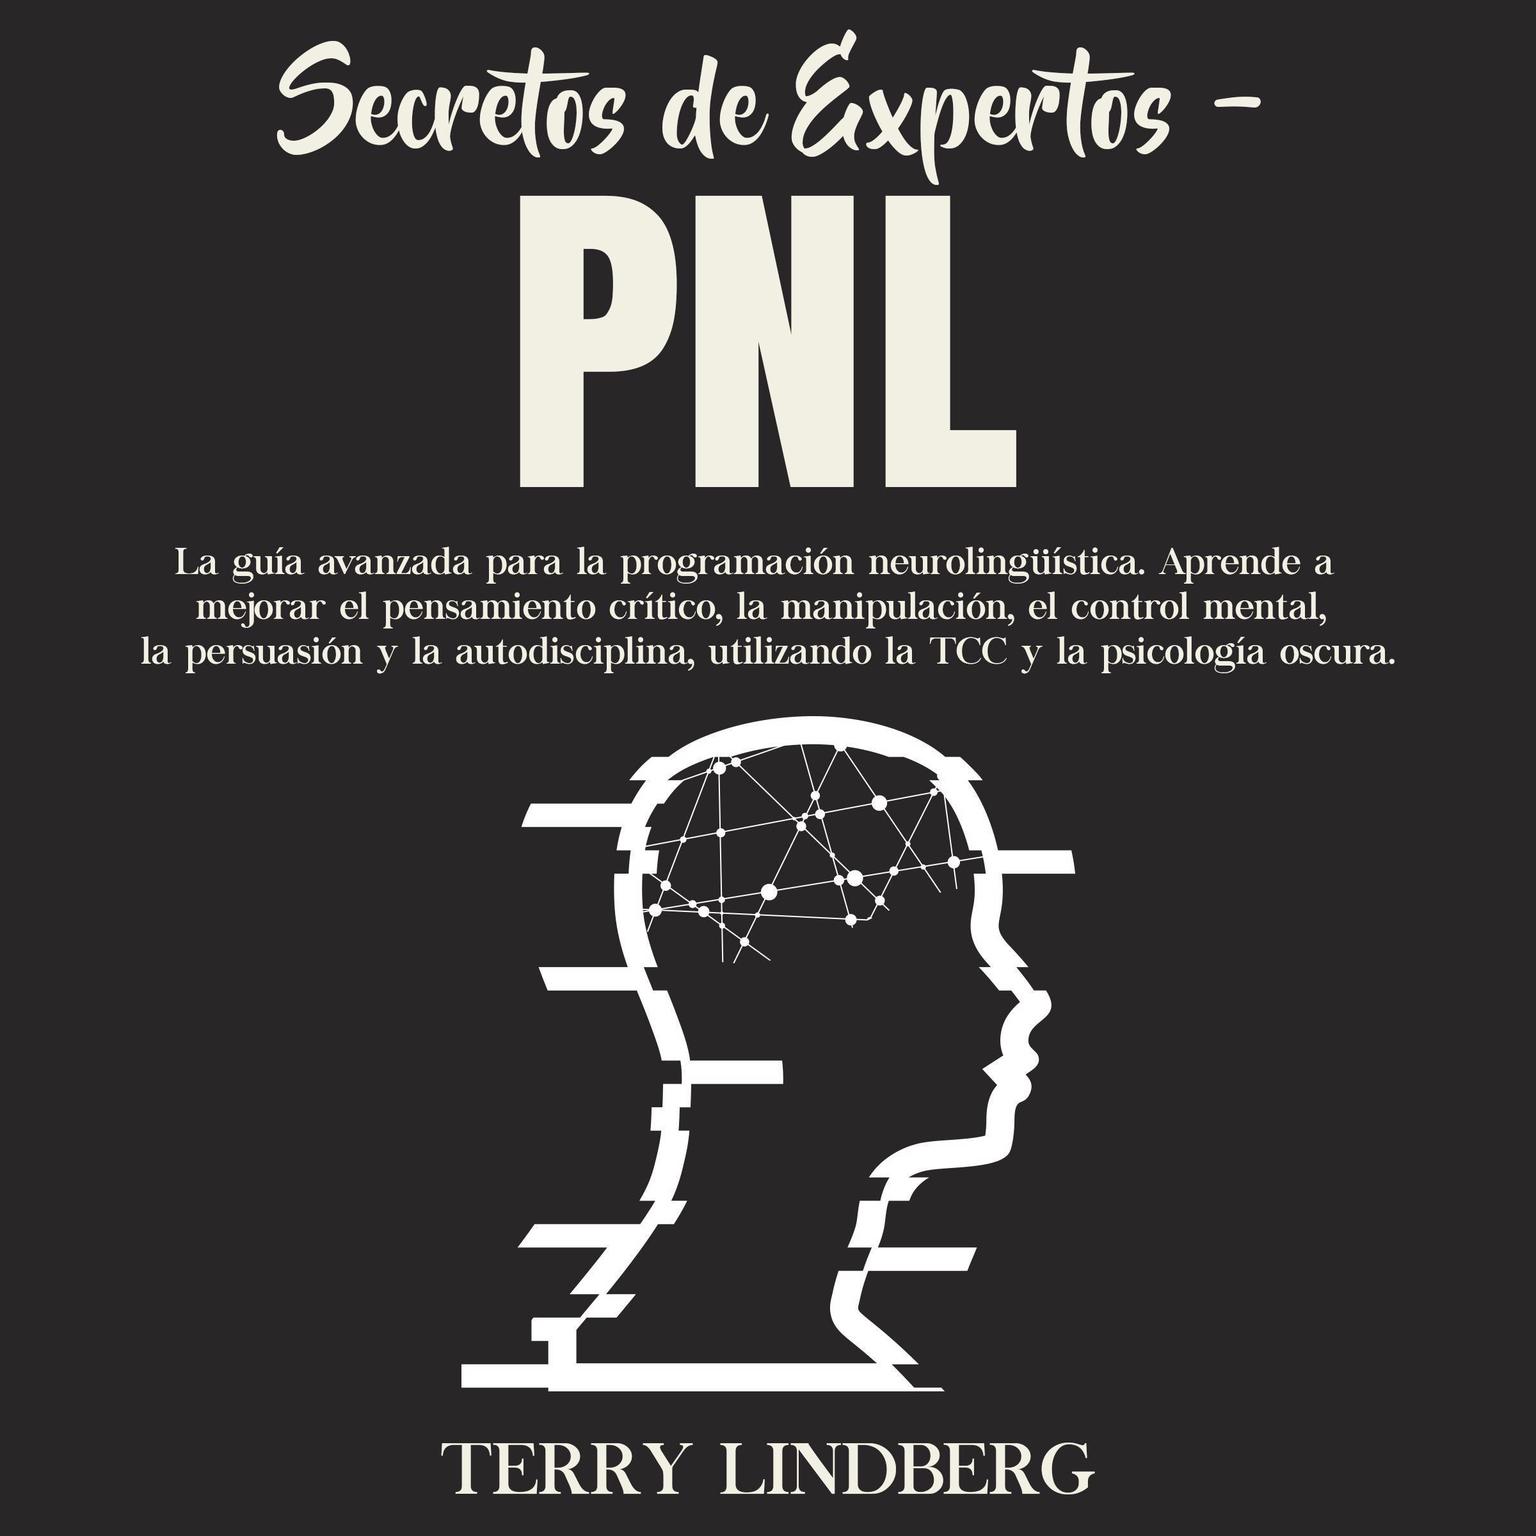 Secretos de Expertos - PNL: La guía avanzada para la programación neurolingüística. Aprende a mejorar el pensamiento crítico, la manipulación, el control mental, la persuasión y la autodisciplina, utilizando la TCC y la psicología oscura. Audiobook, by Terry Lindberg